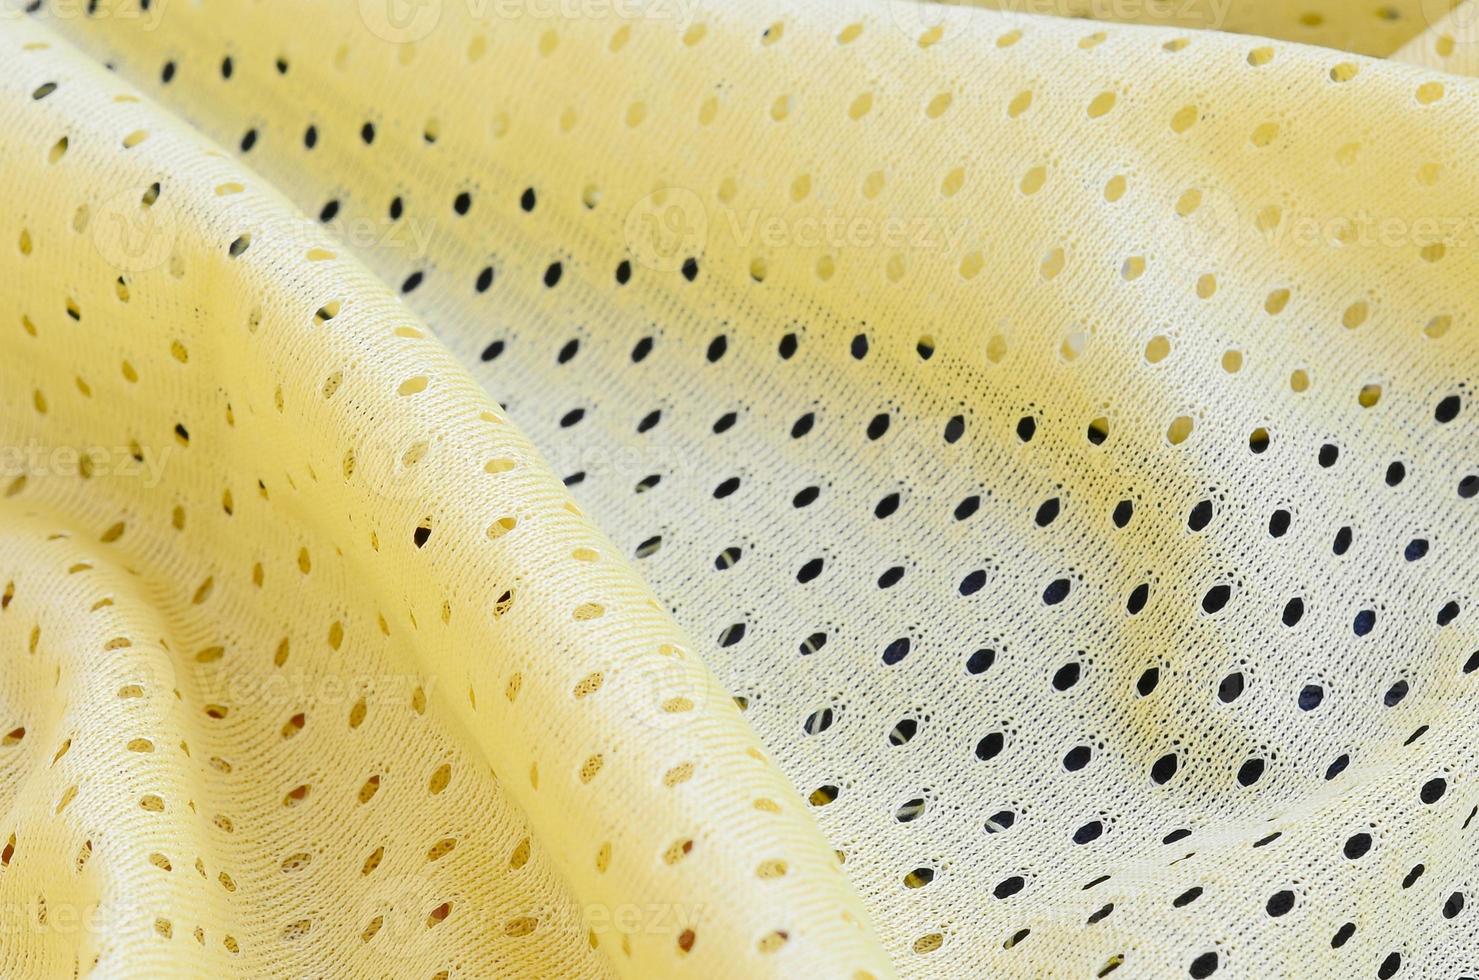 patrón de fondo textil de tela de desgaste deportivo de malla amarilla foto